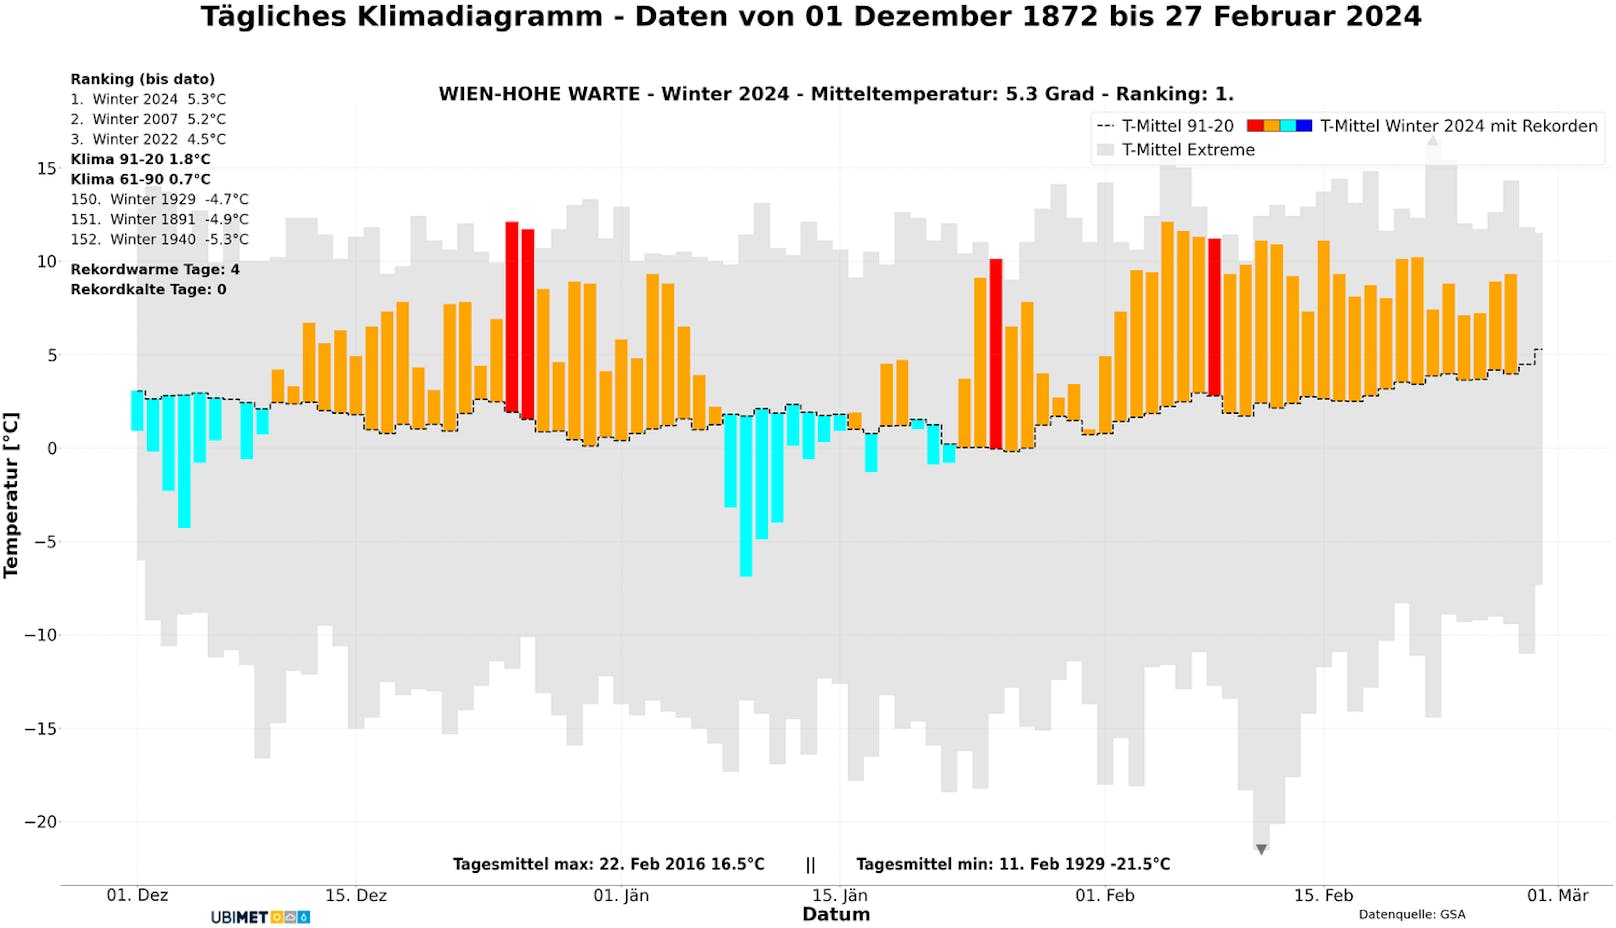 Der Winter 2023/2024 war der wärmste seit Messbeginn in Österreich.